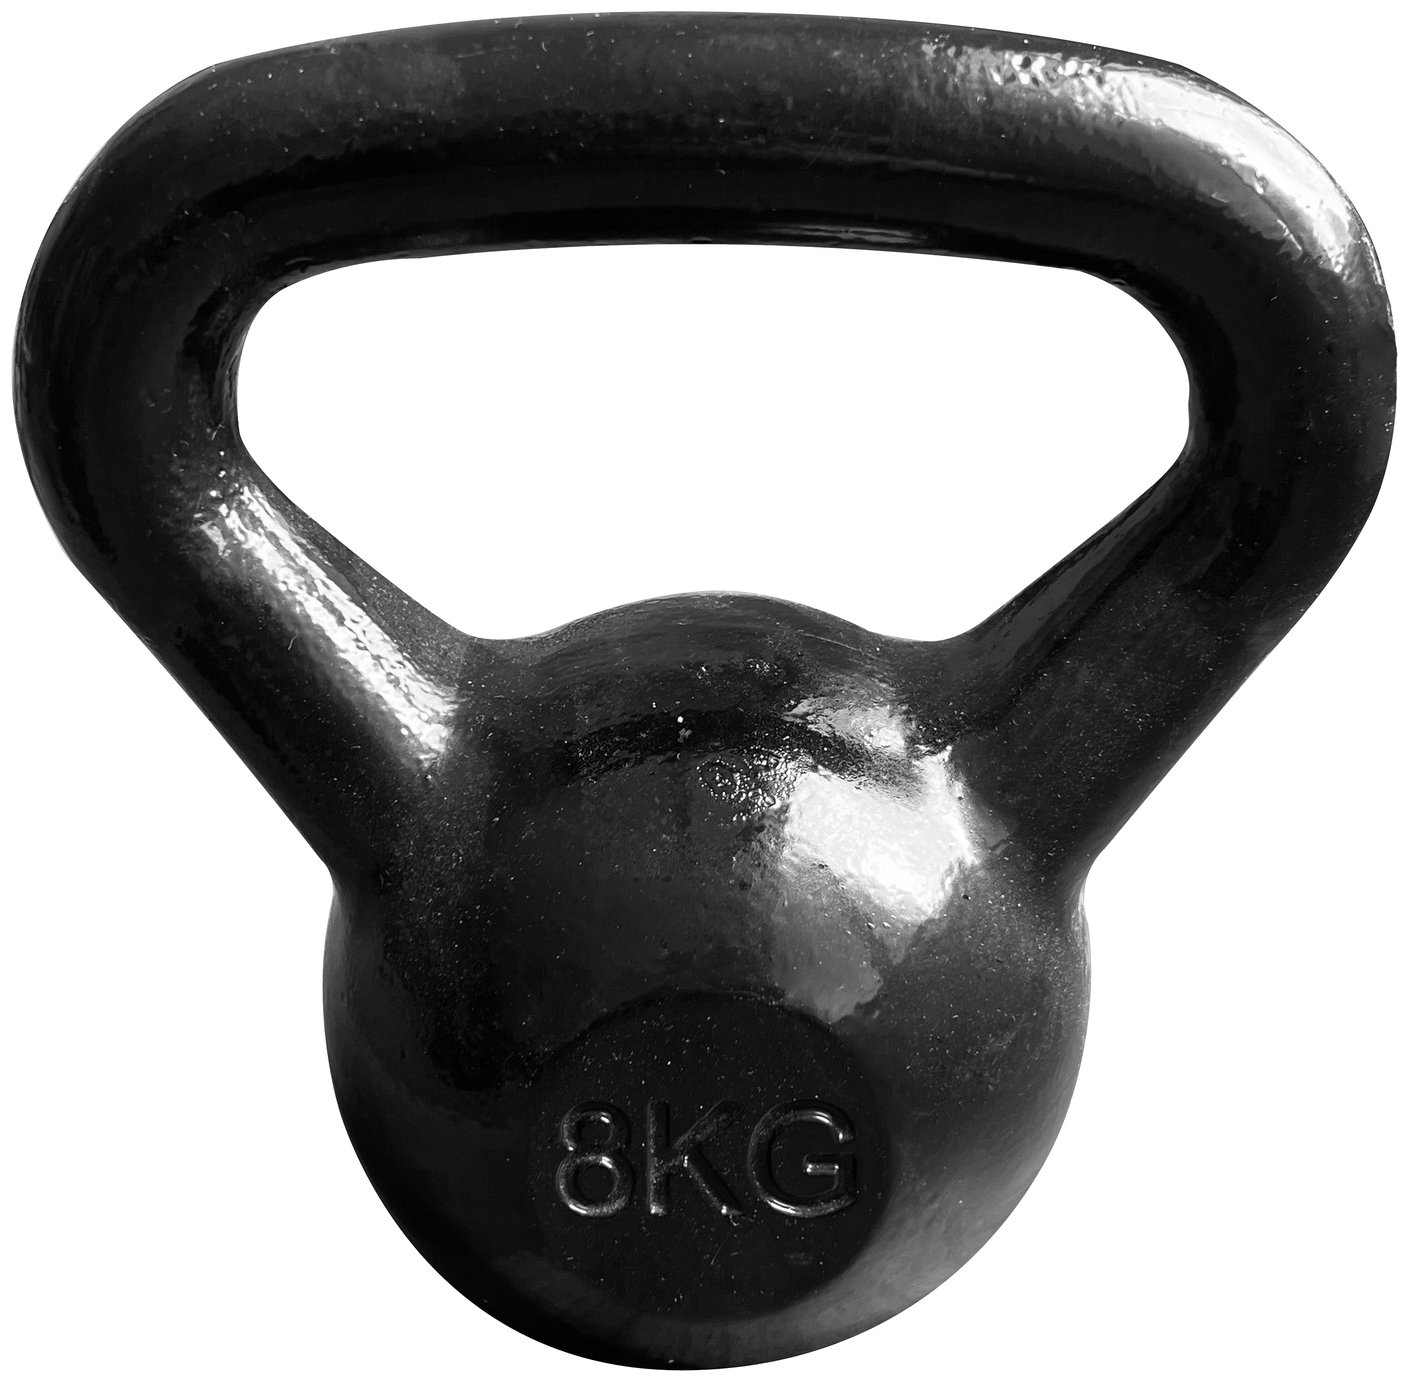 Pro Fitness 8KG Cast Iron Kettlebell - Black